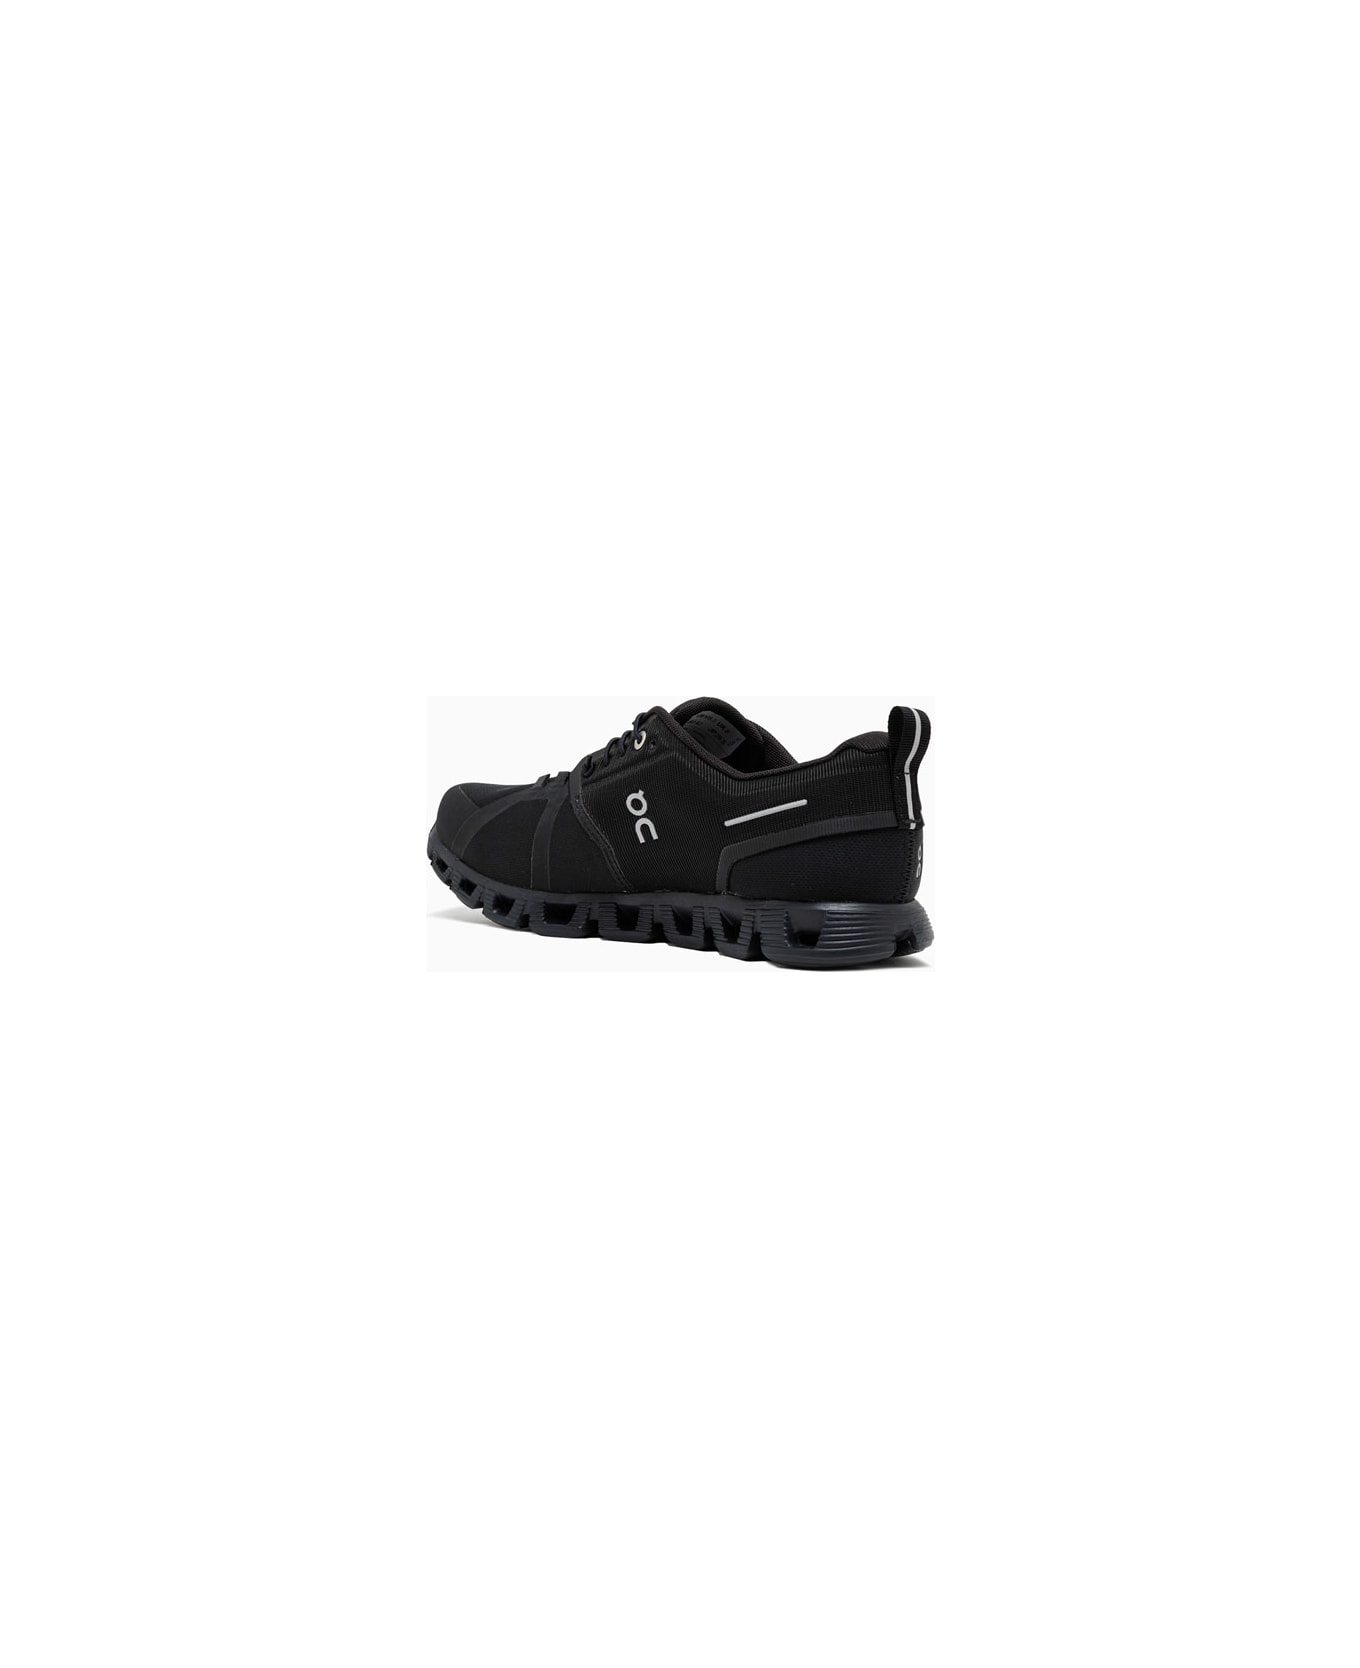 ON Cloud 5 Waterproof Sneakers 59.988338 - All Black